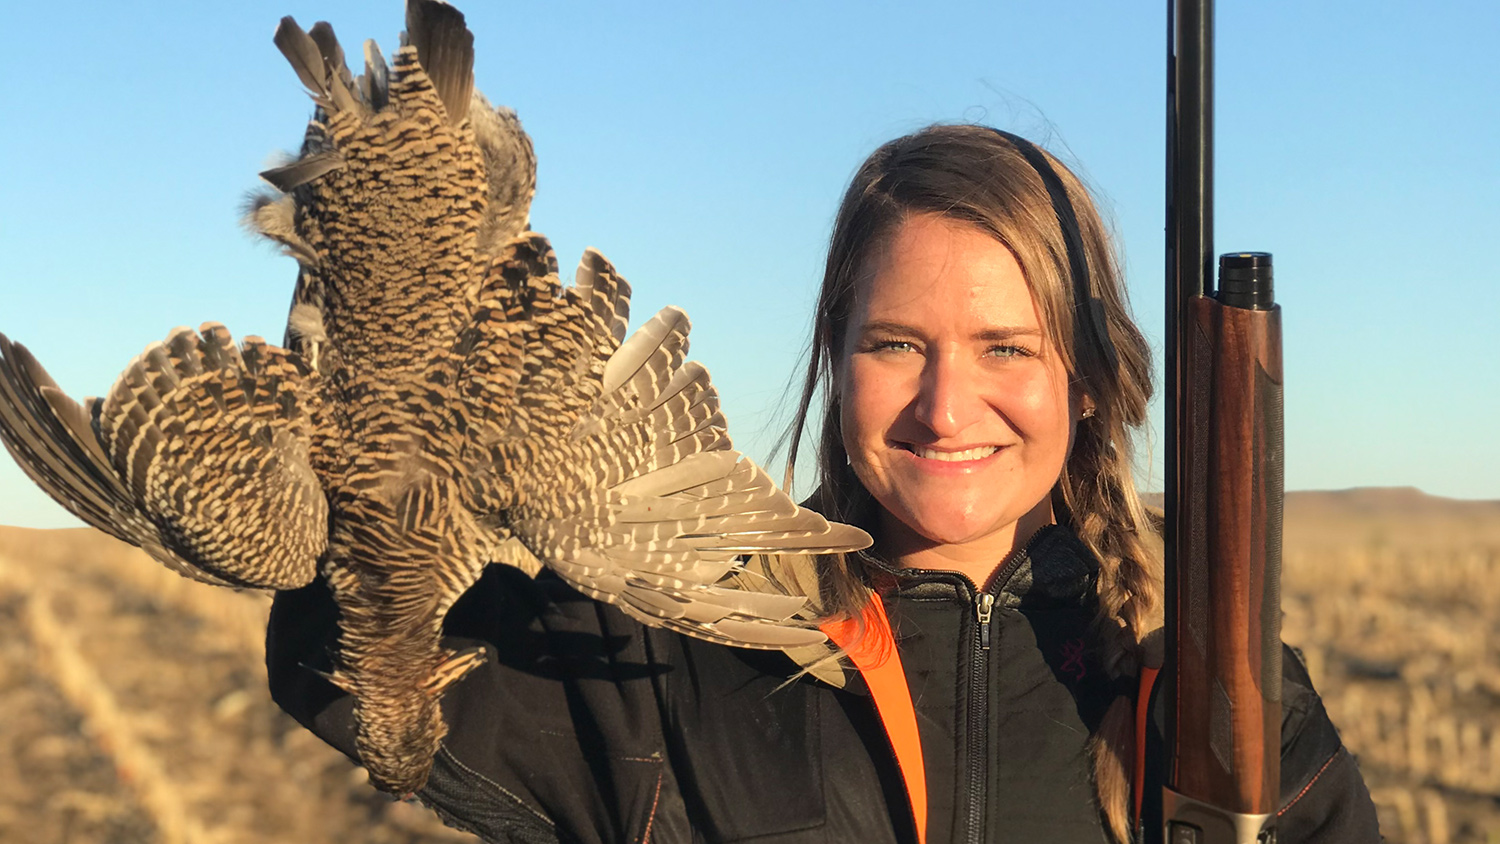 Ashley Vanderhoof of Browning Lifestyle in South Dakota on a prairie chicken hunt